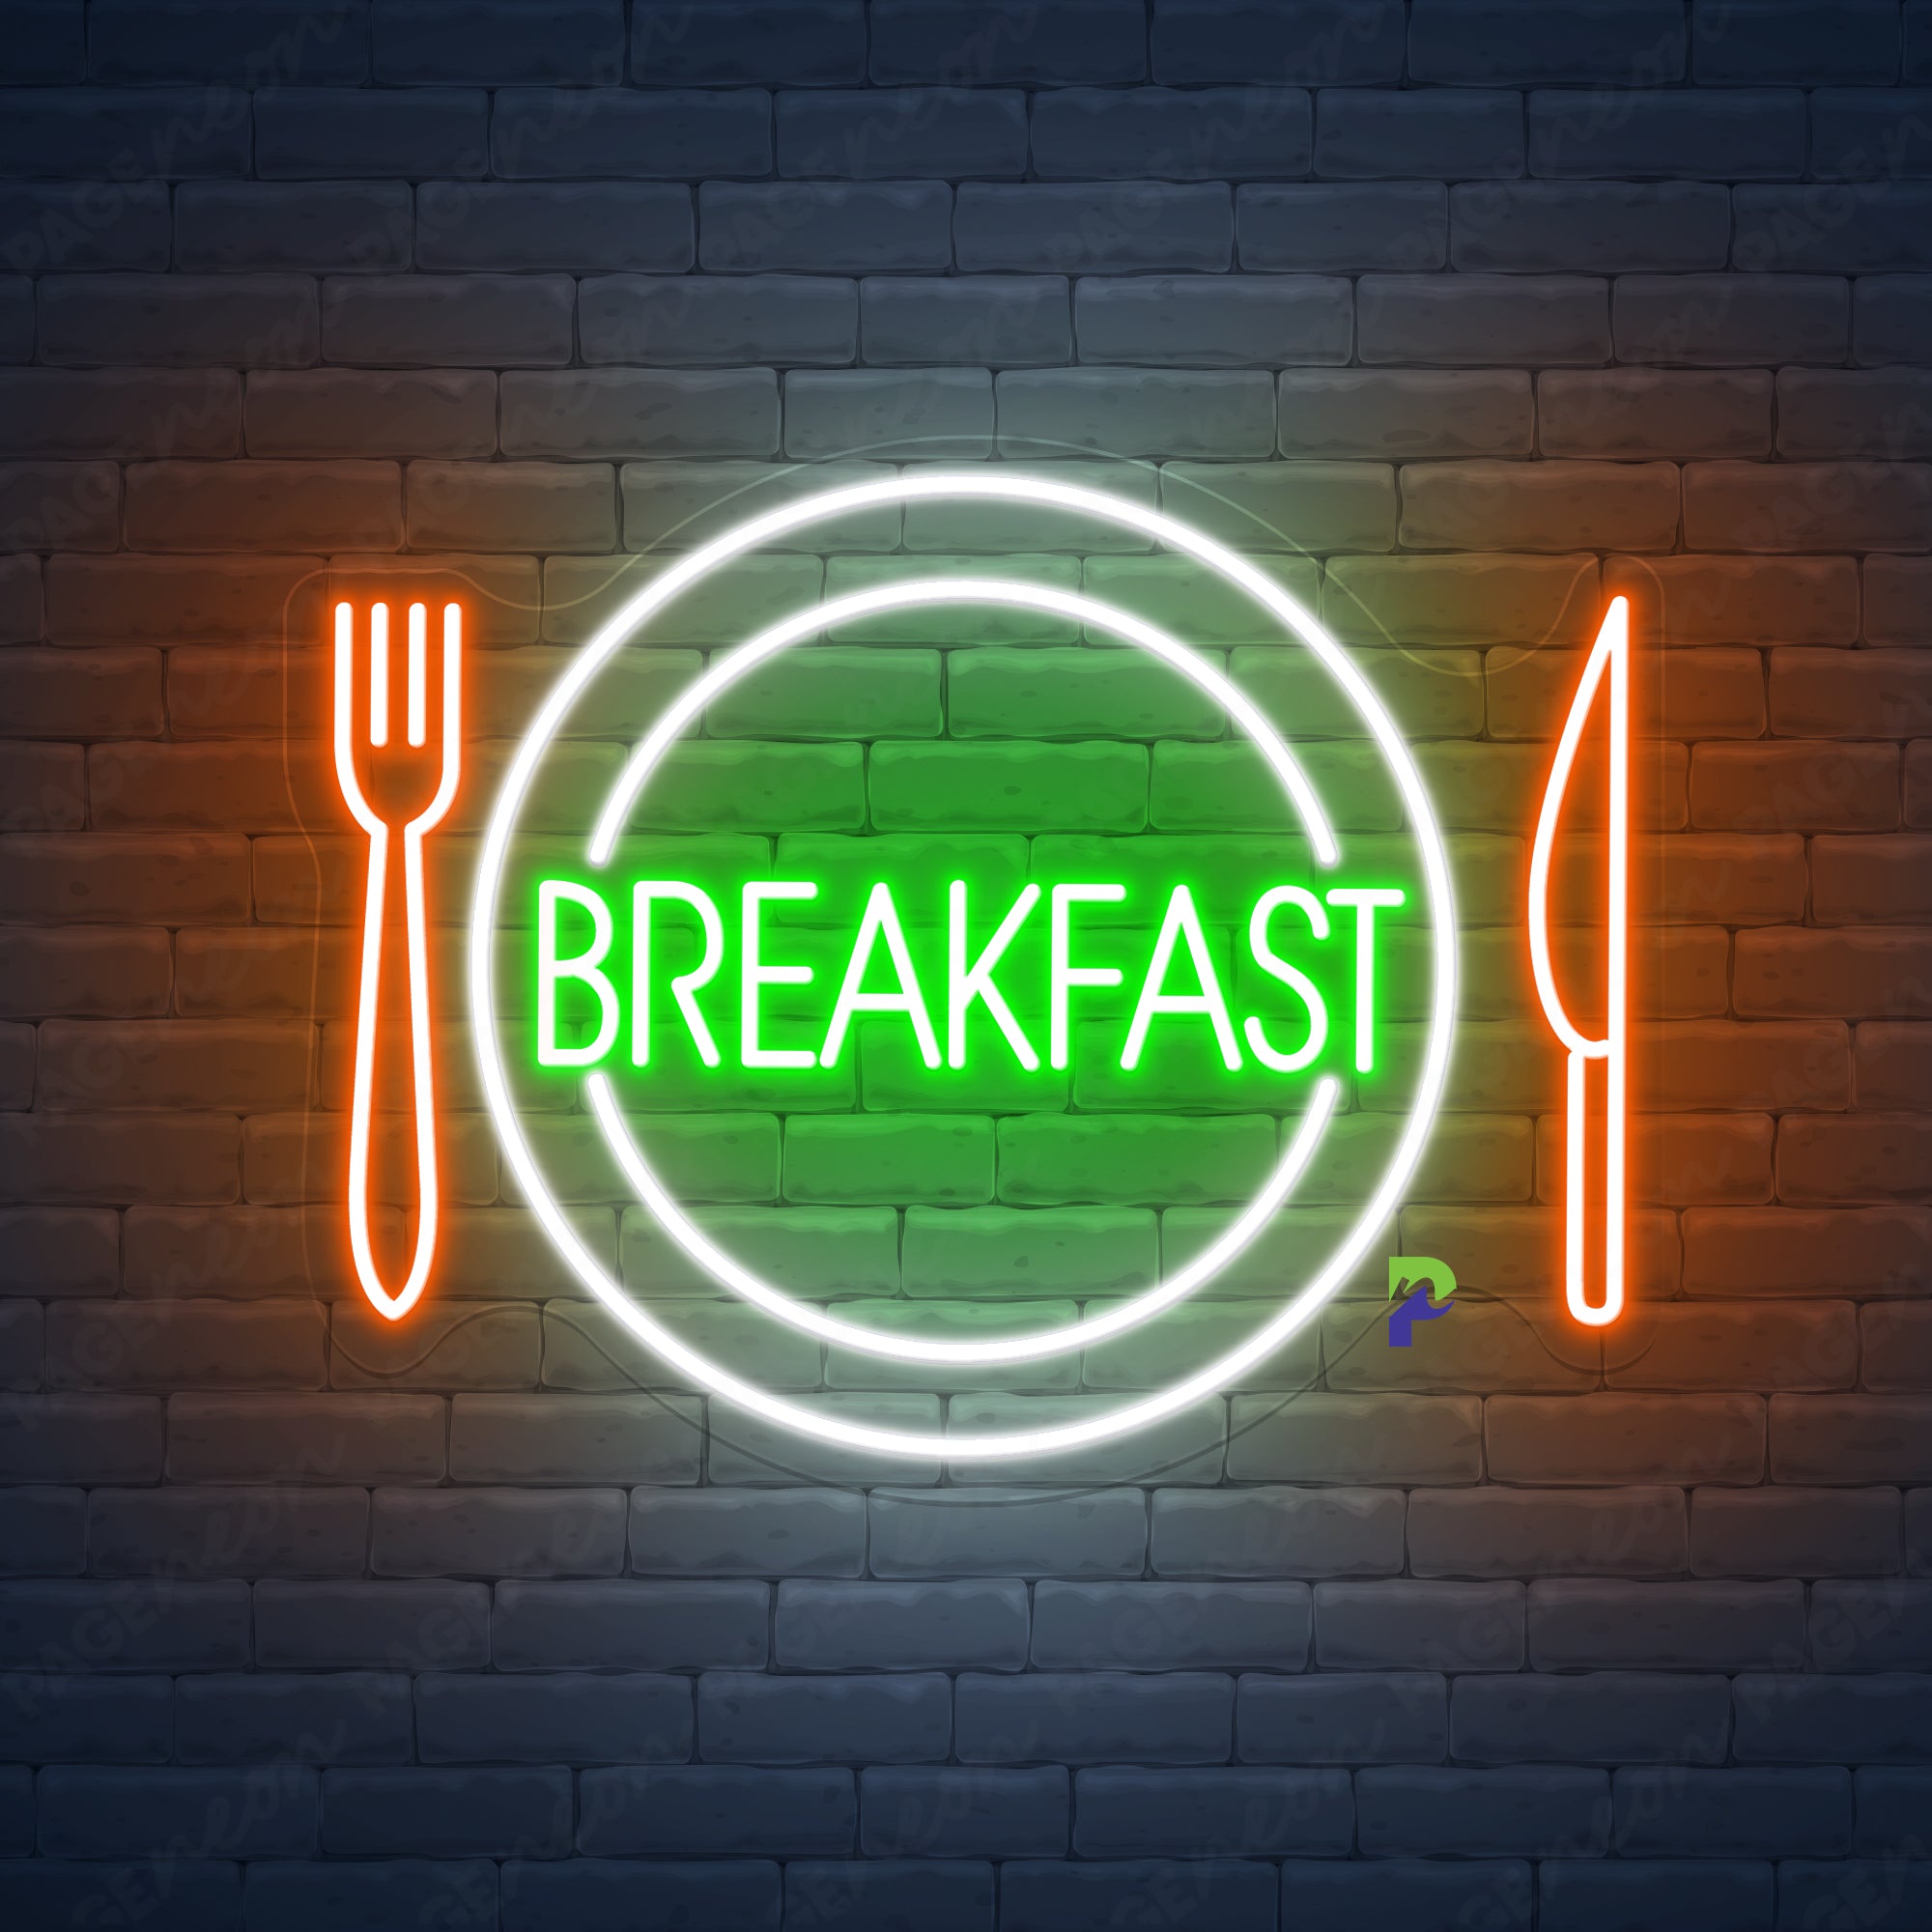 Breakfast Neon Sign Led Light For Business